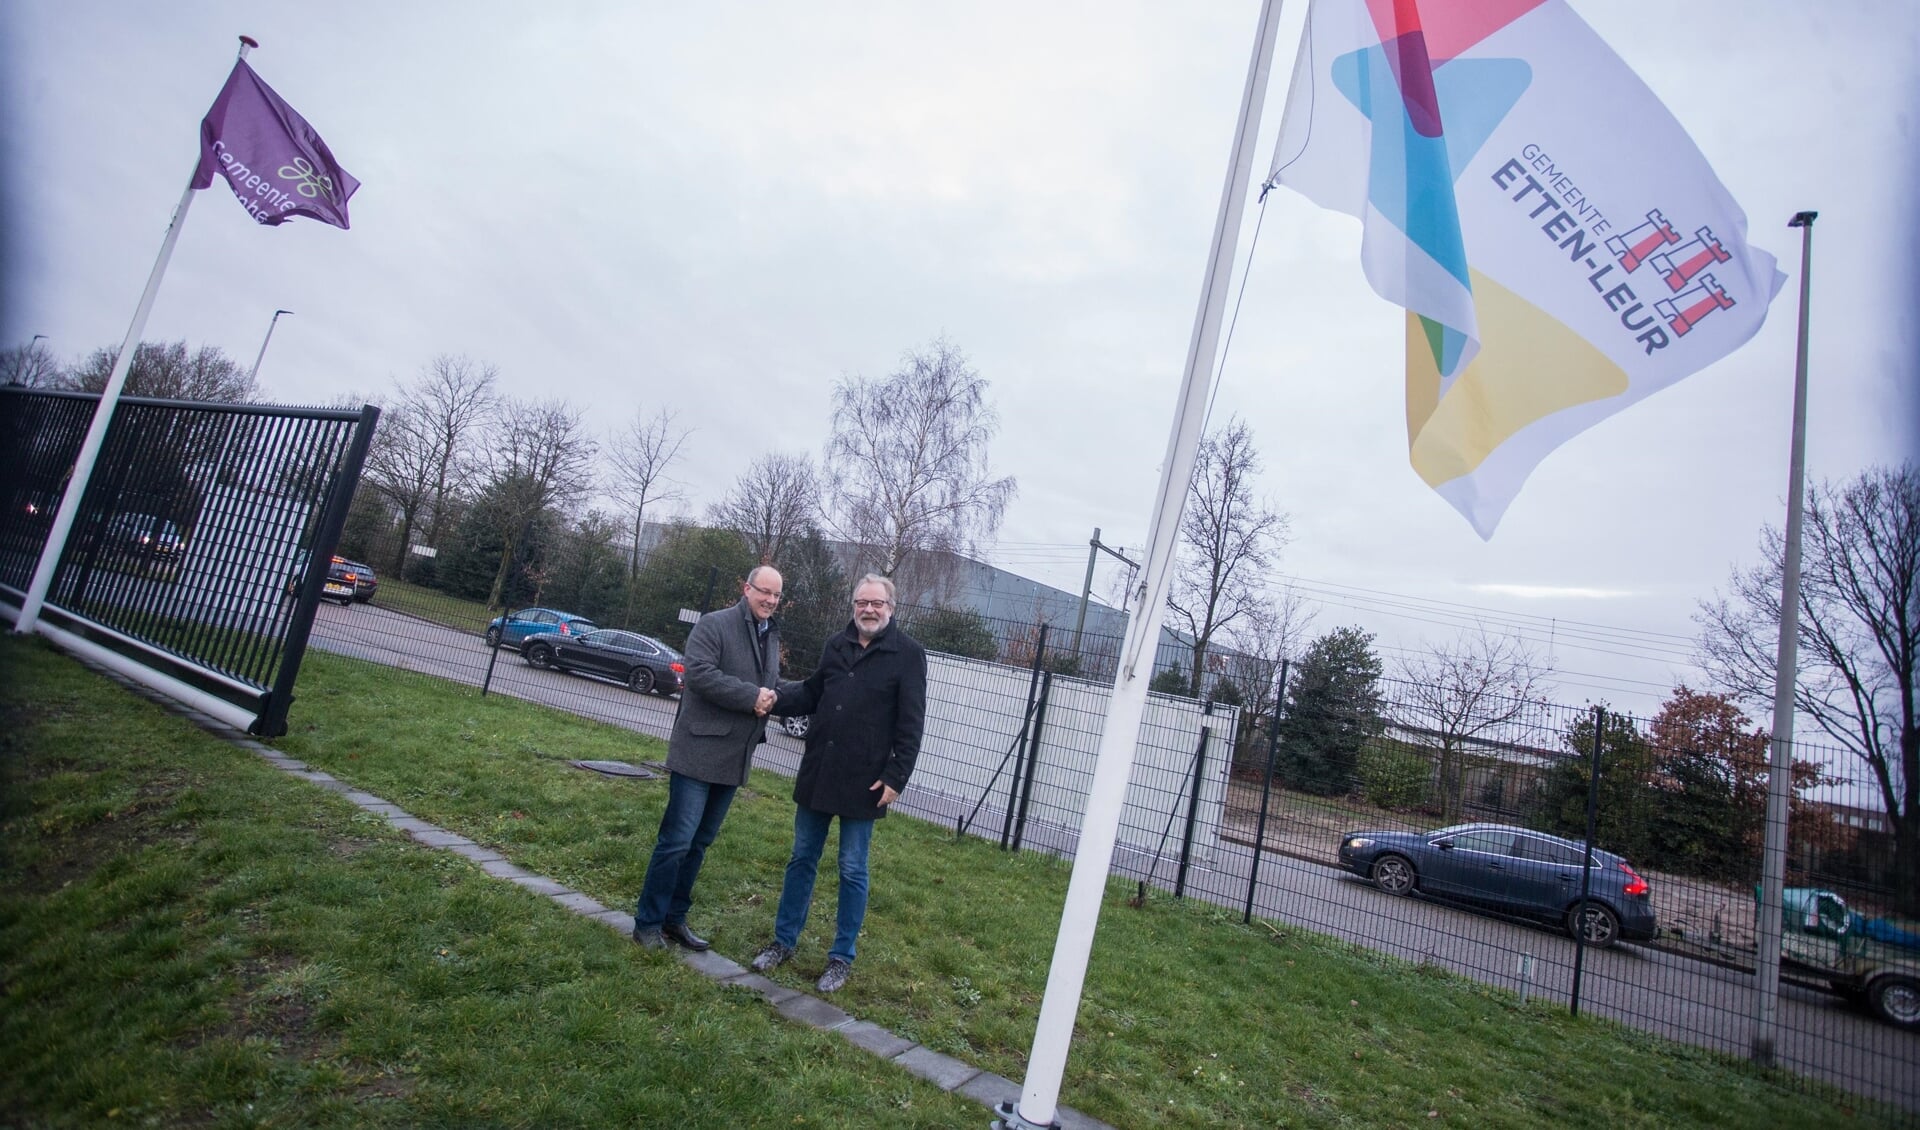 Aan de per 1 januari 2020 gestarte samenwerking tussen de gemeenten Rucphen en Etten-Leur komt een einde.